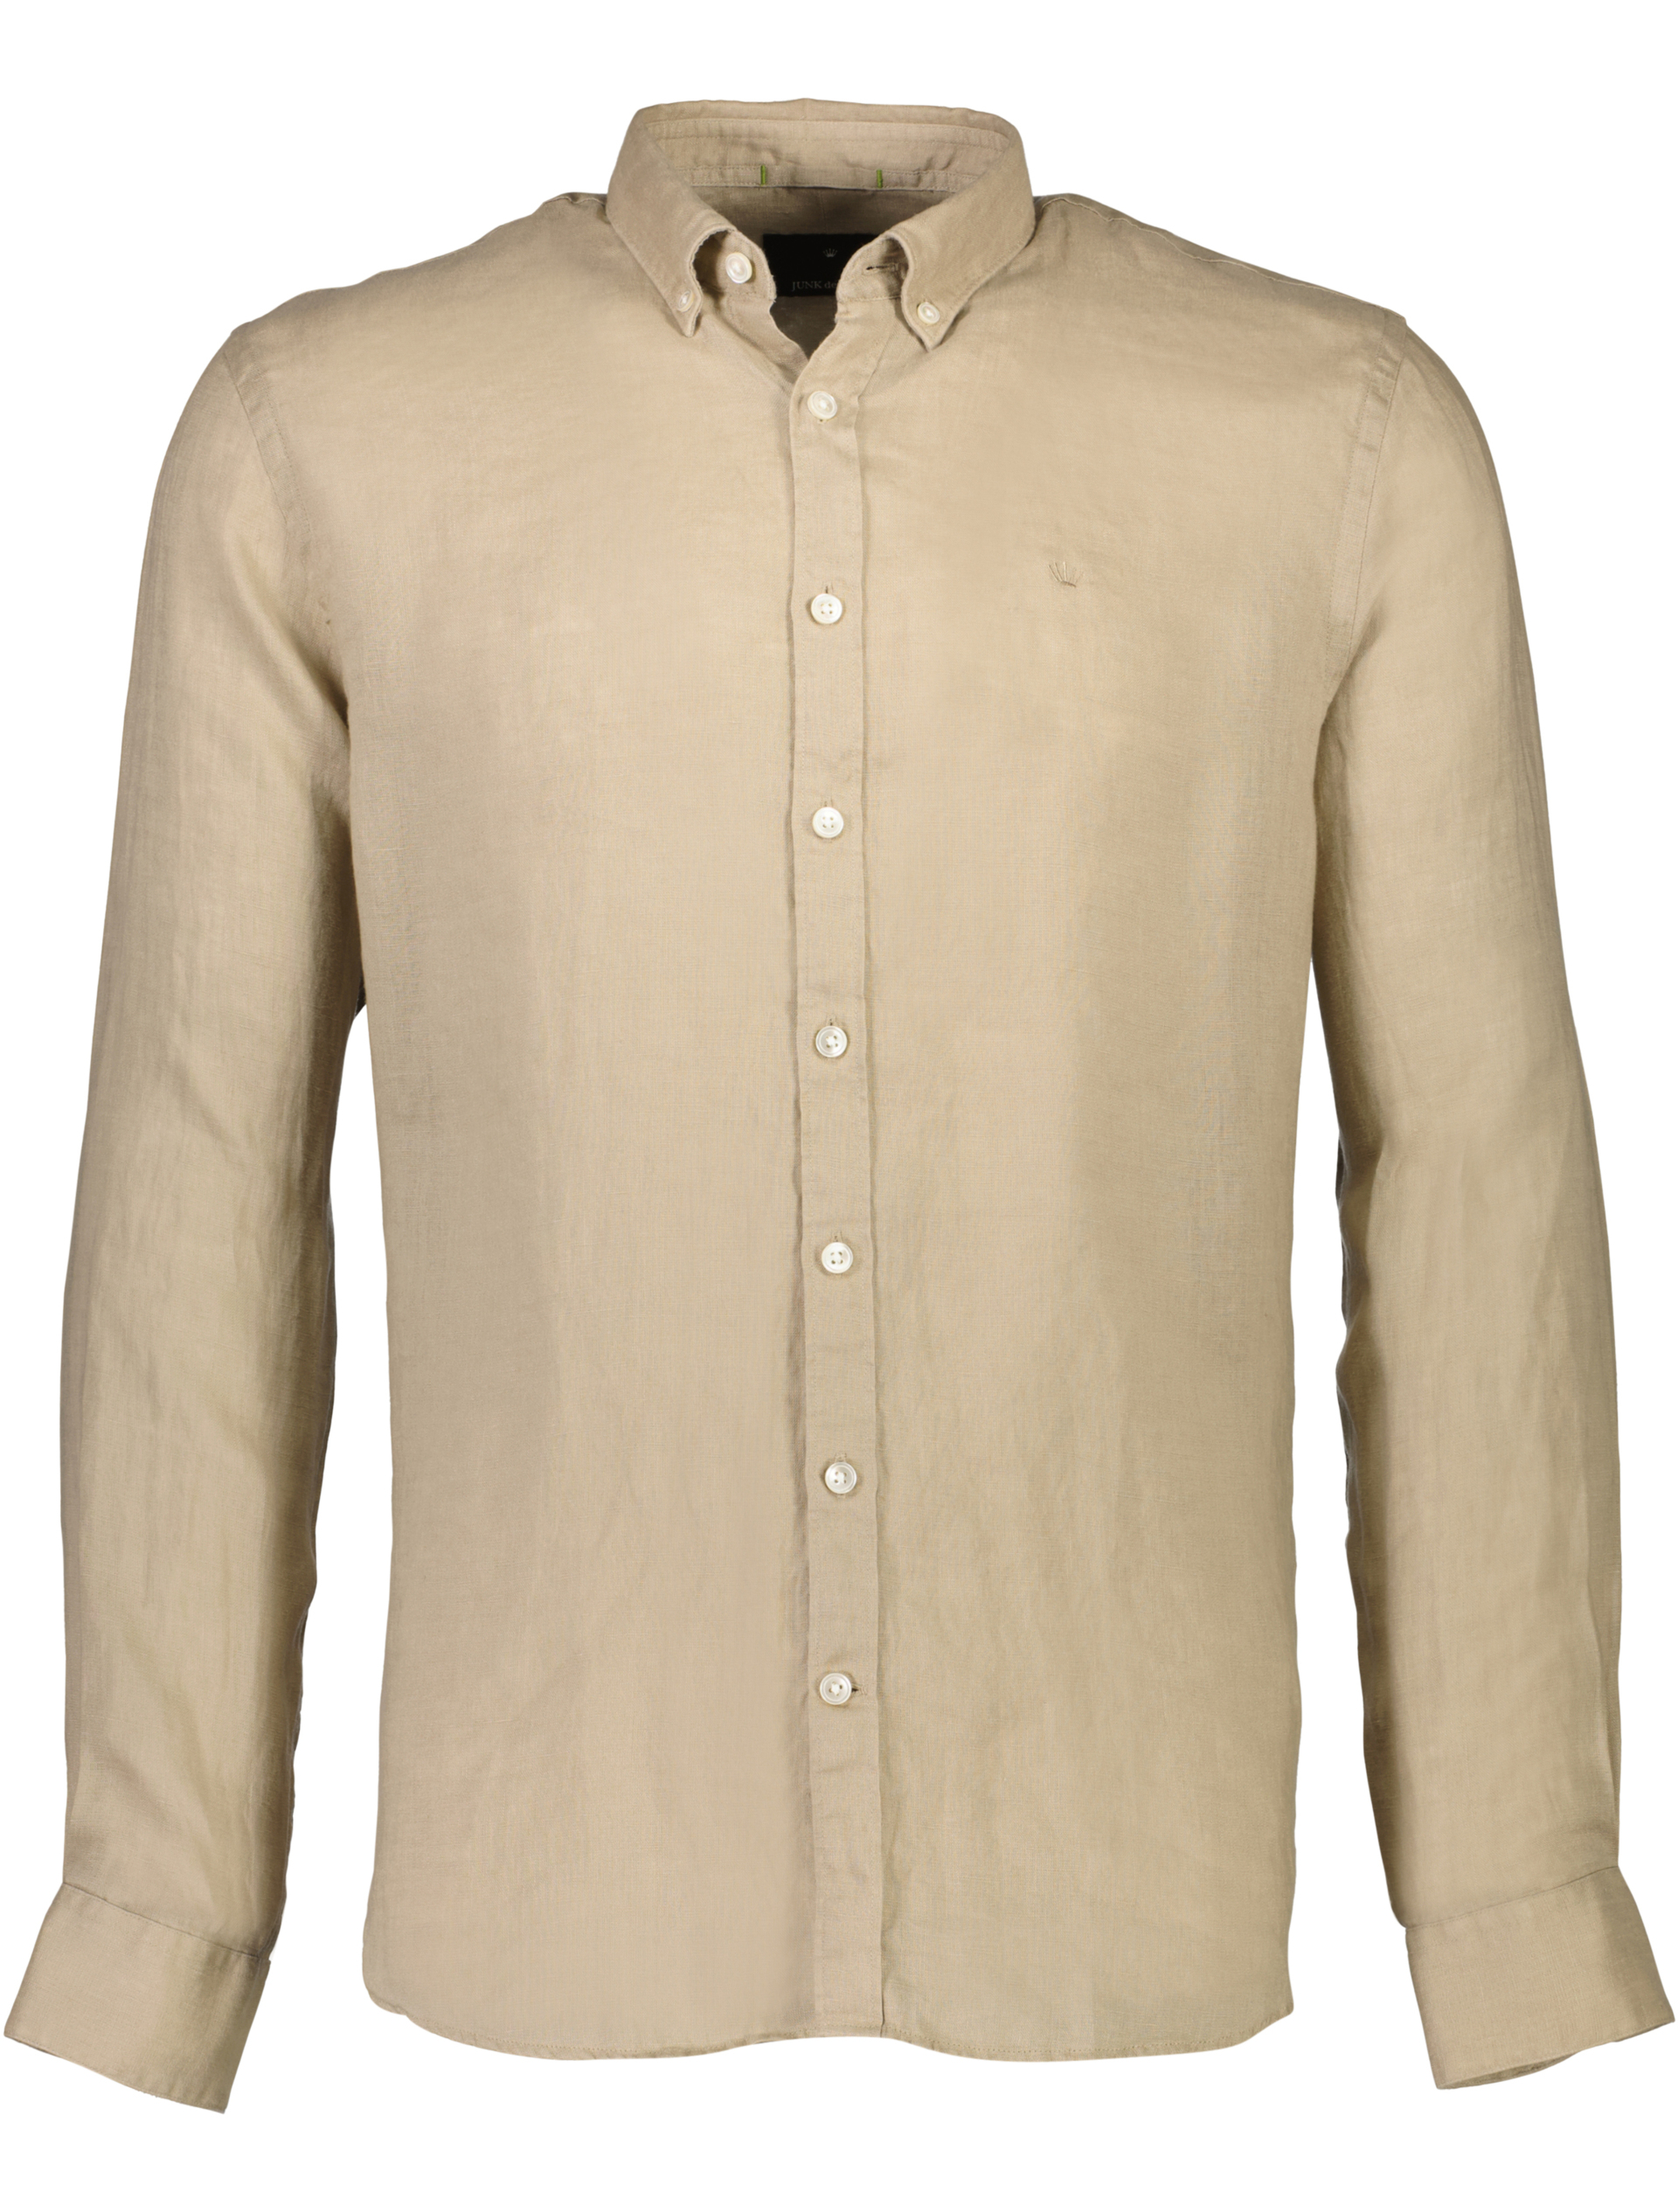 Junk de Luxe Linen shirt sand / sand